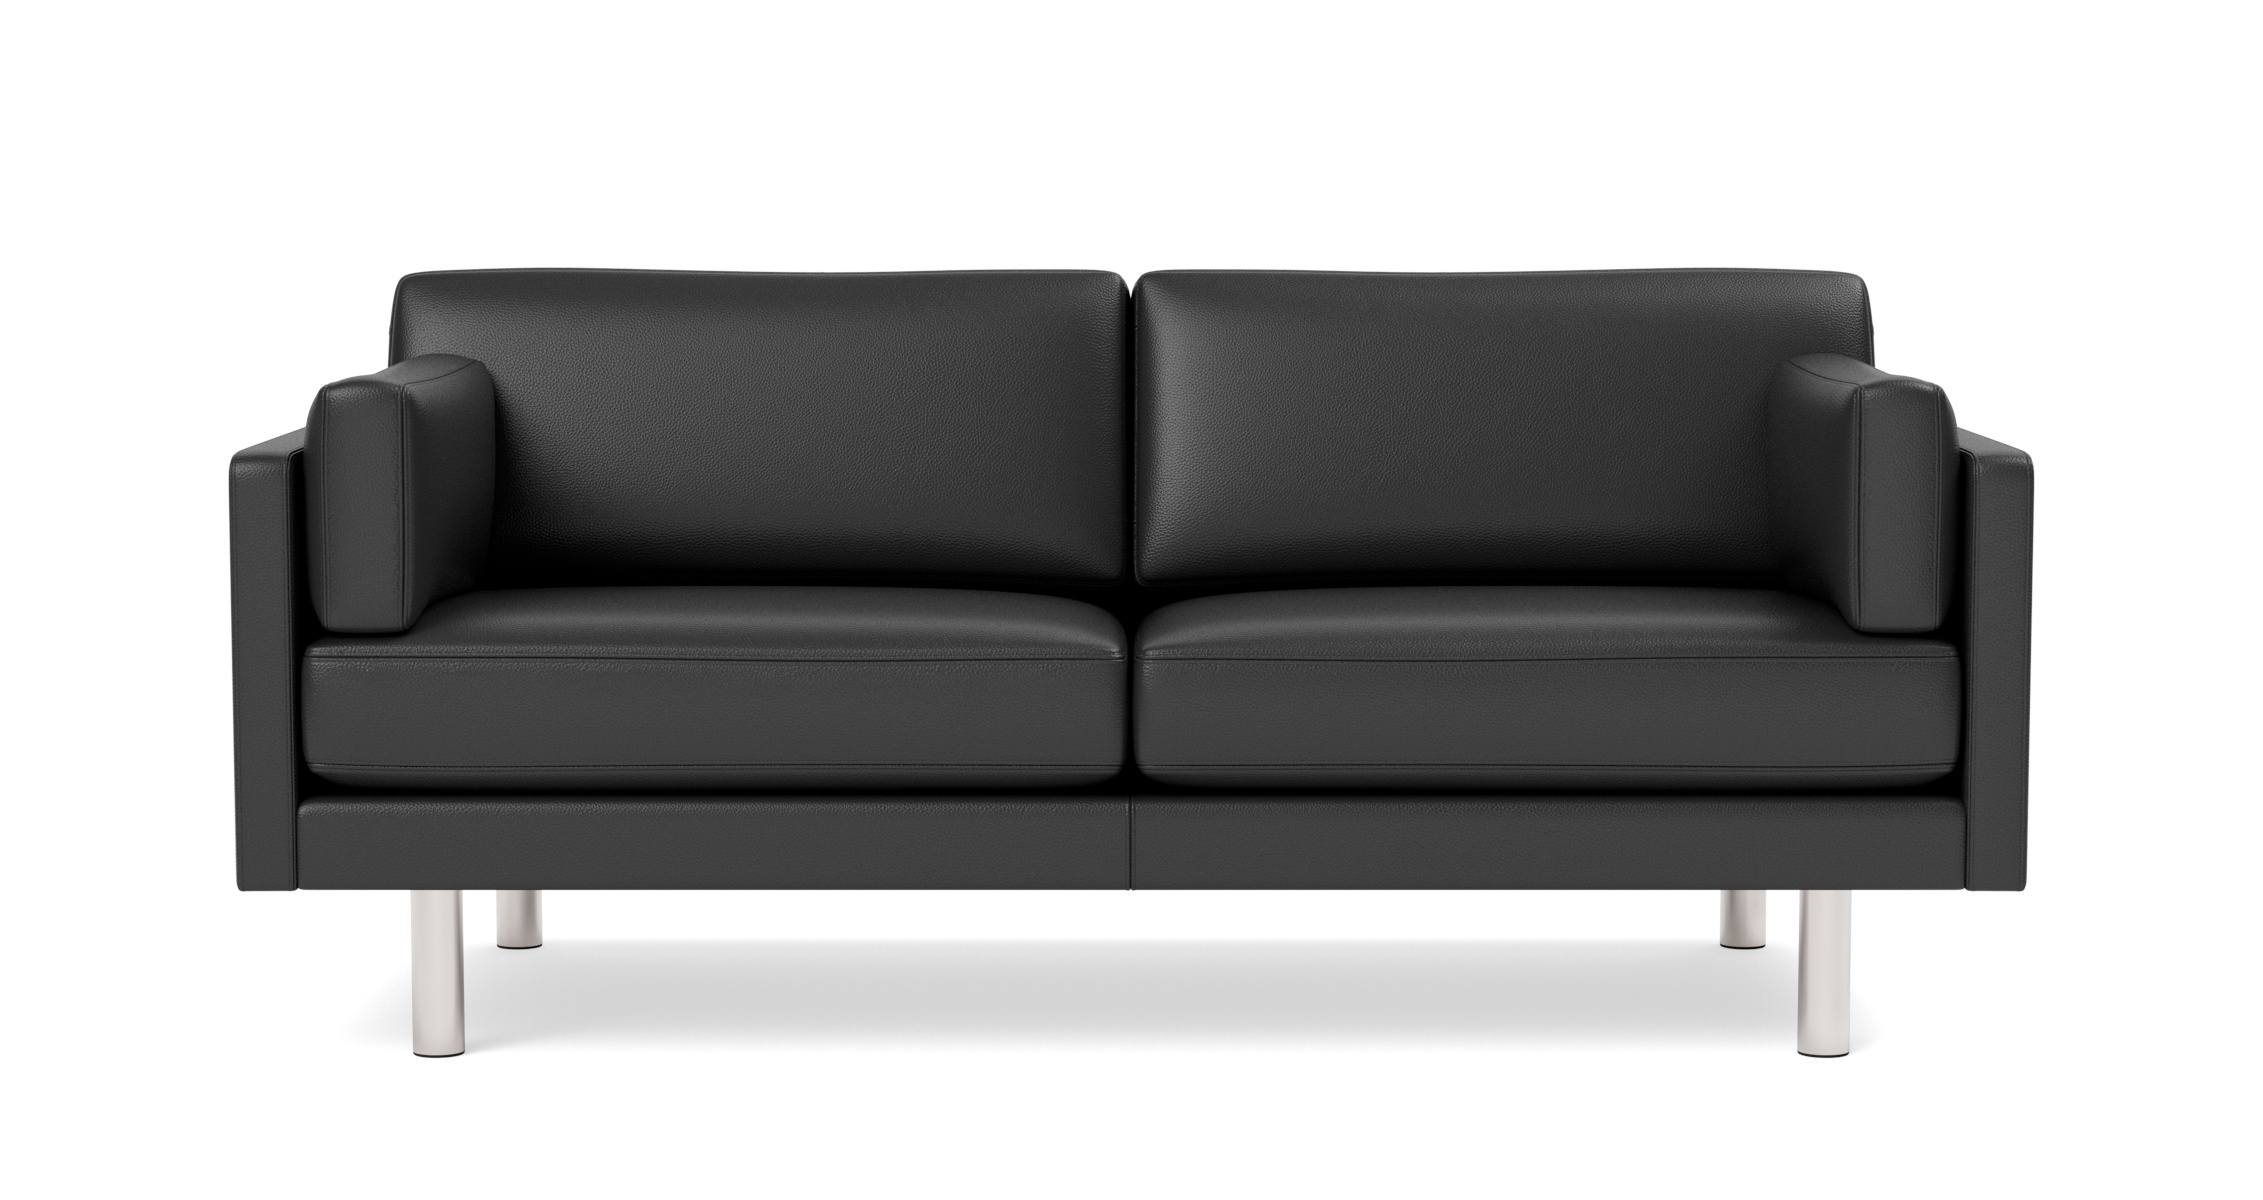 EJ220 Sofa 2-Sitzer, 76 cm, brushed chrom / leder omni 301 schwarz